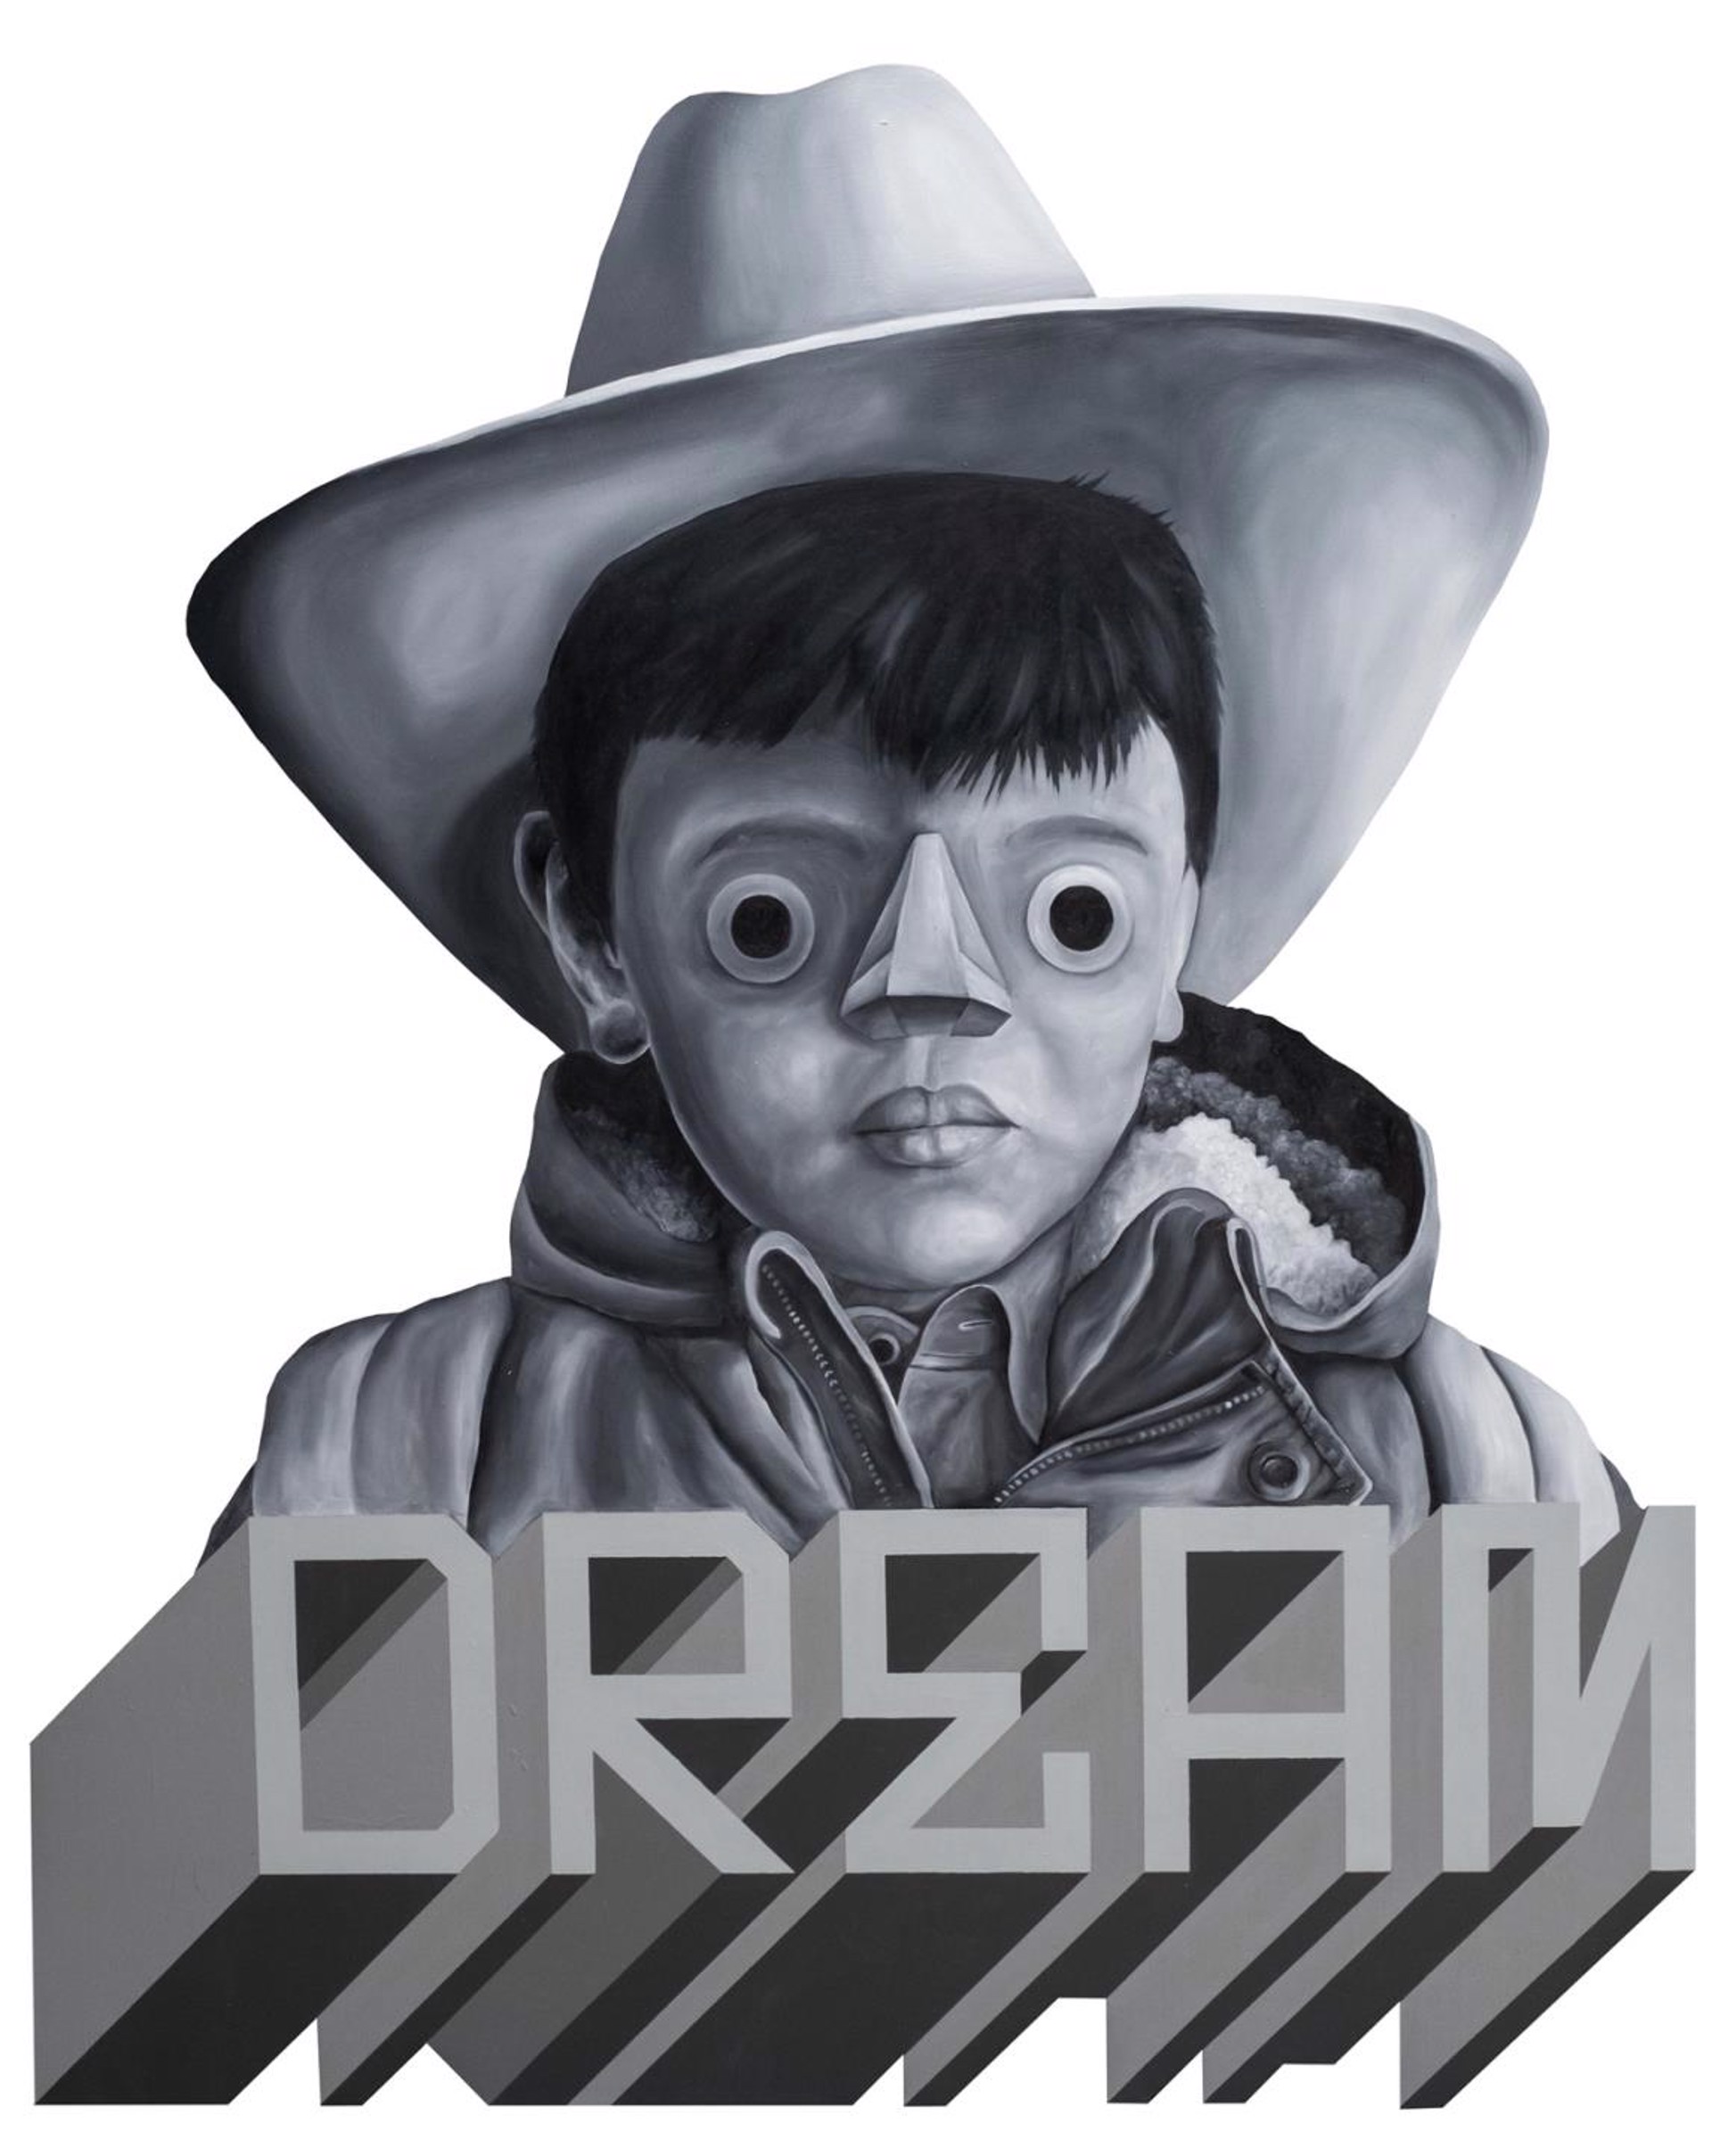 DREAM (Sombrero Boy) by Carlos Donjuan